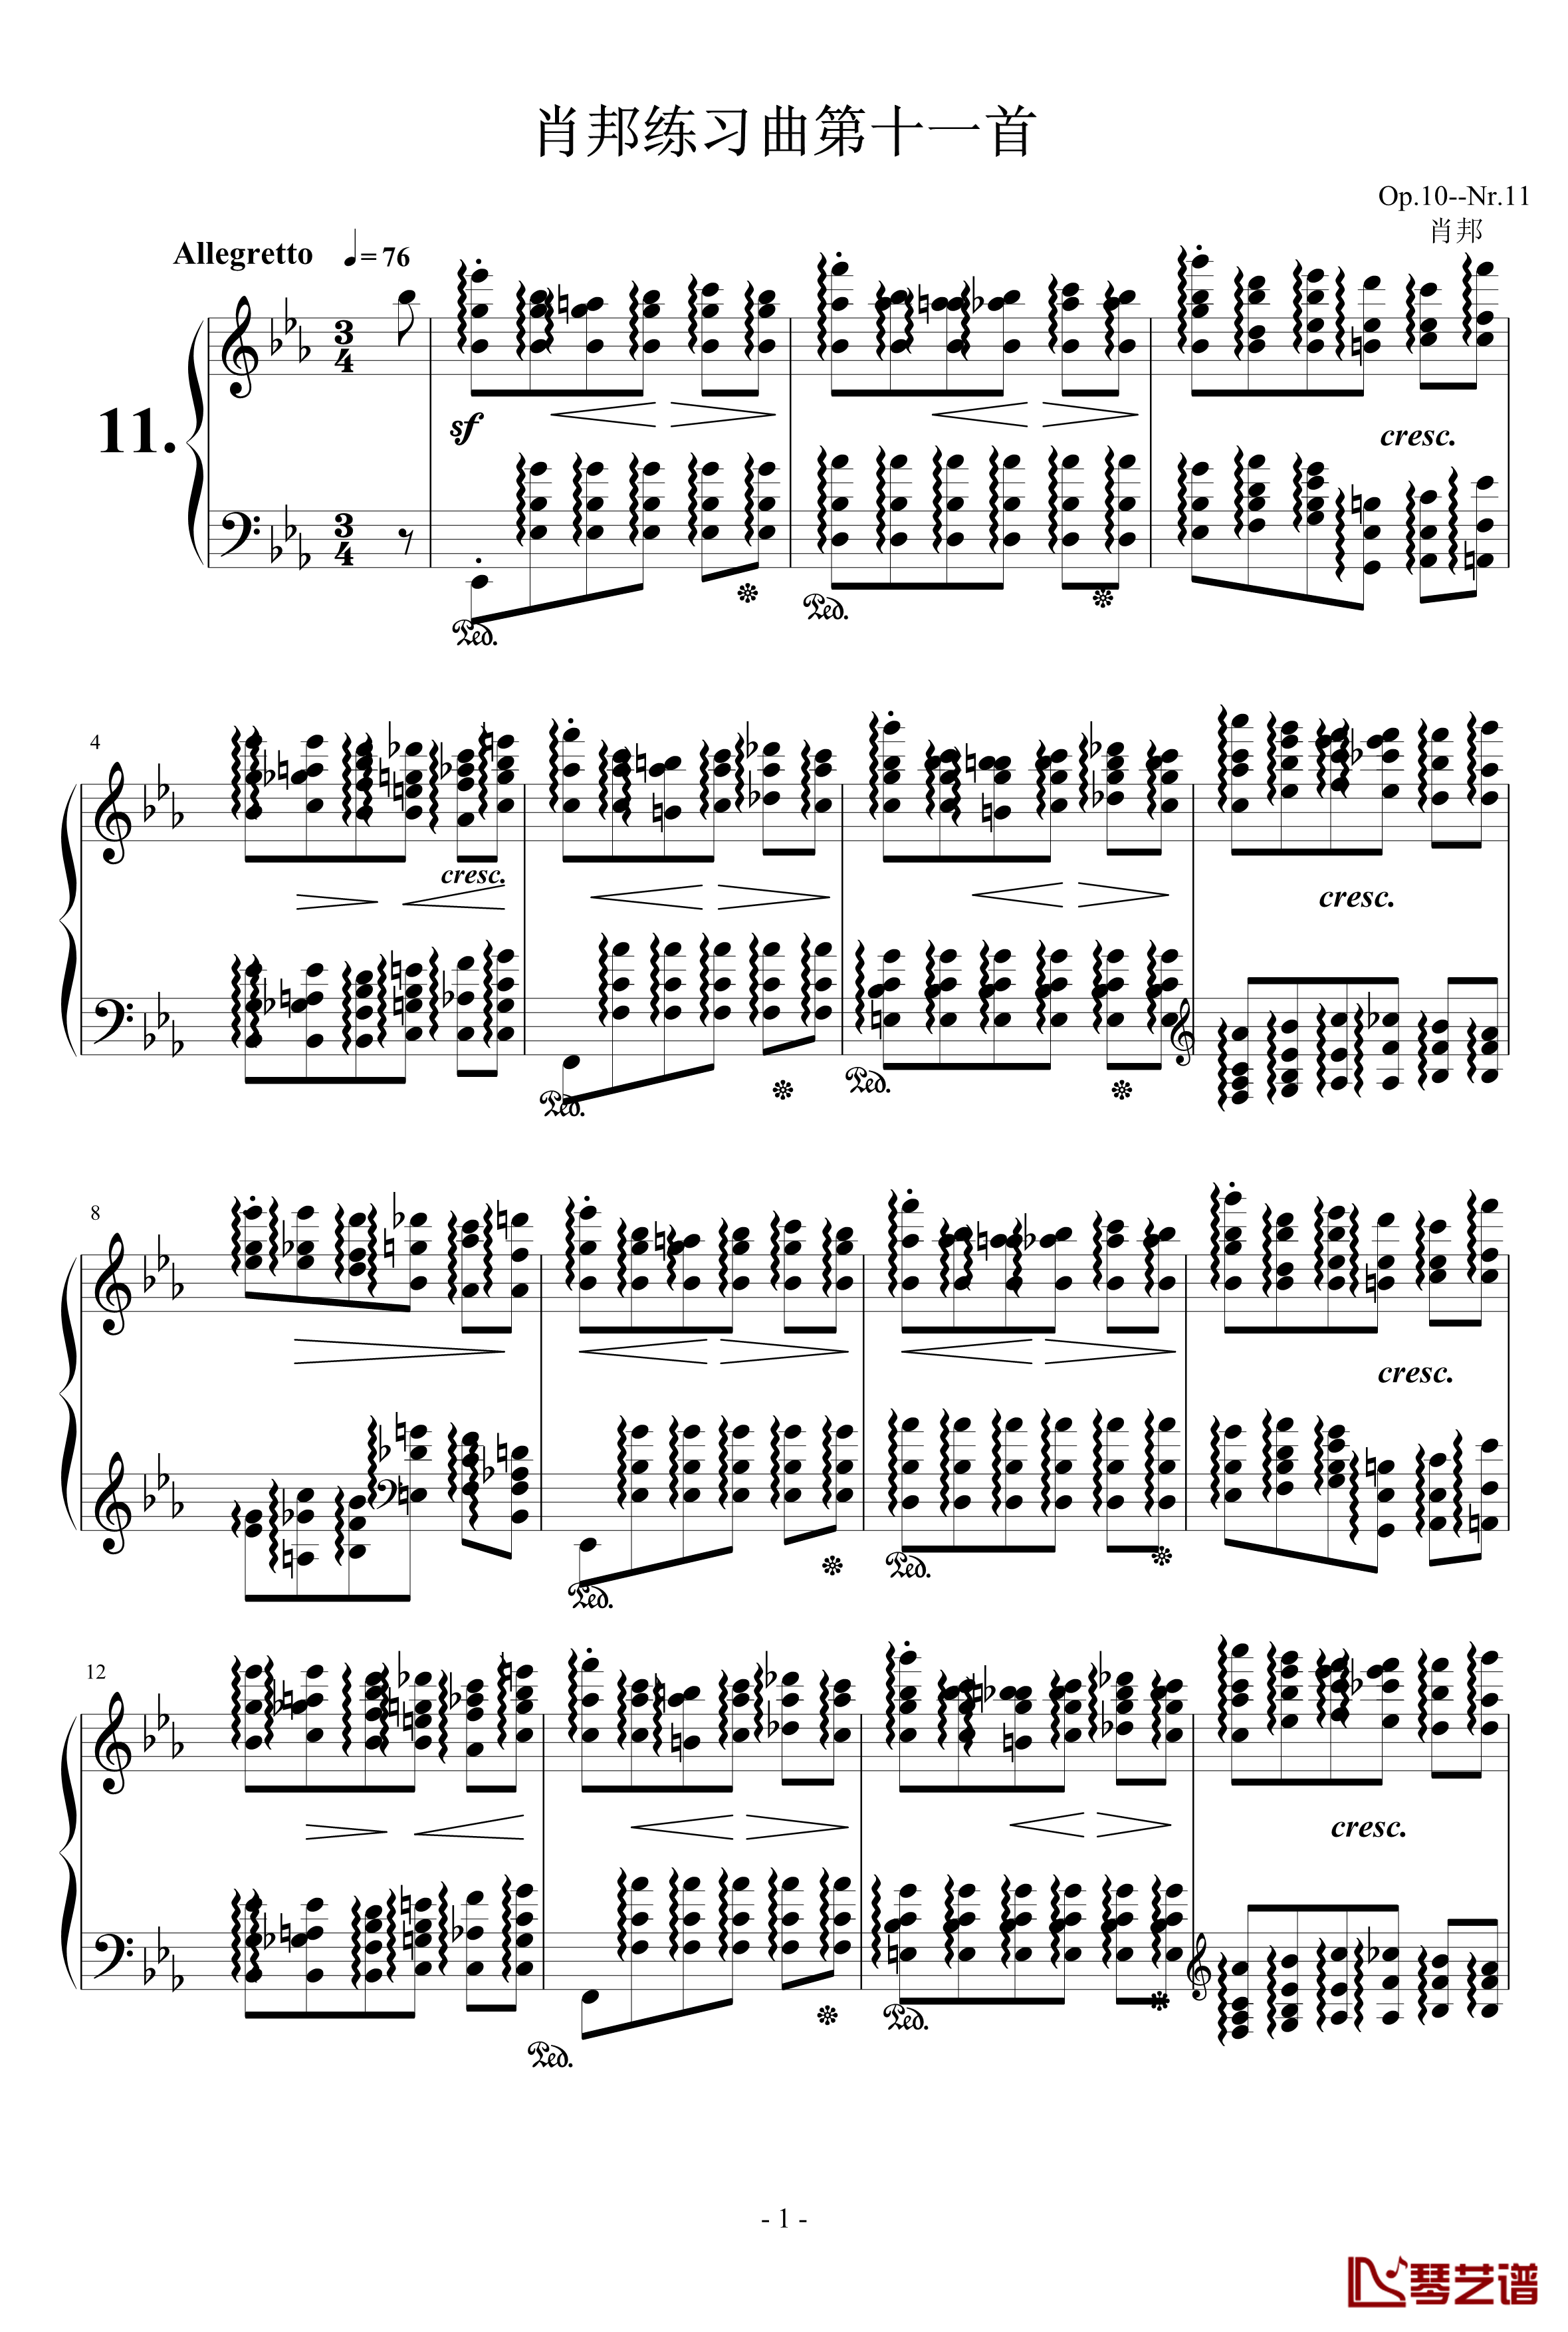 肖邦练习曲第11首钢琴谱-肖邦-chopin1